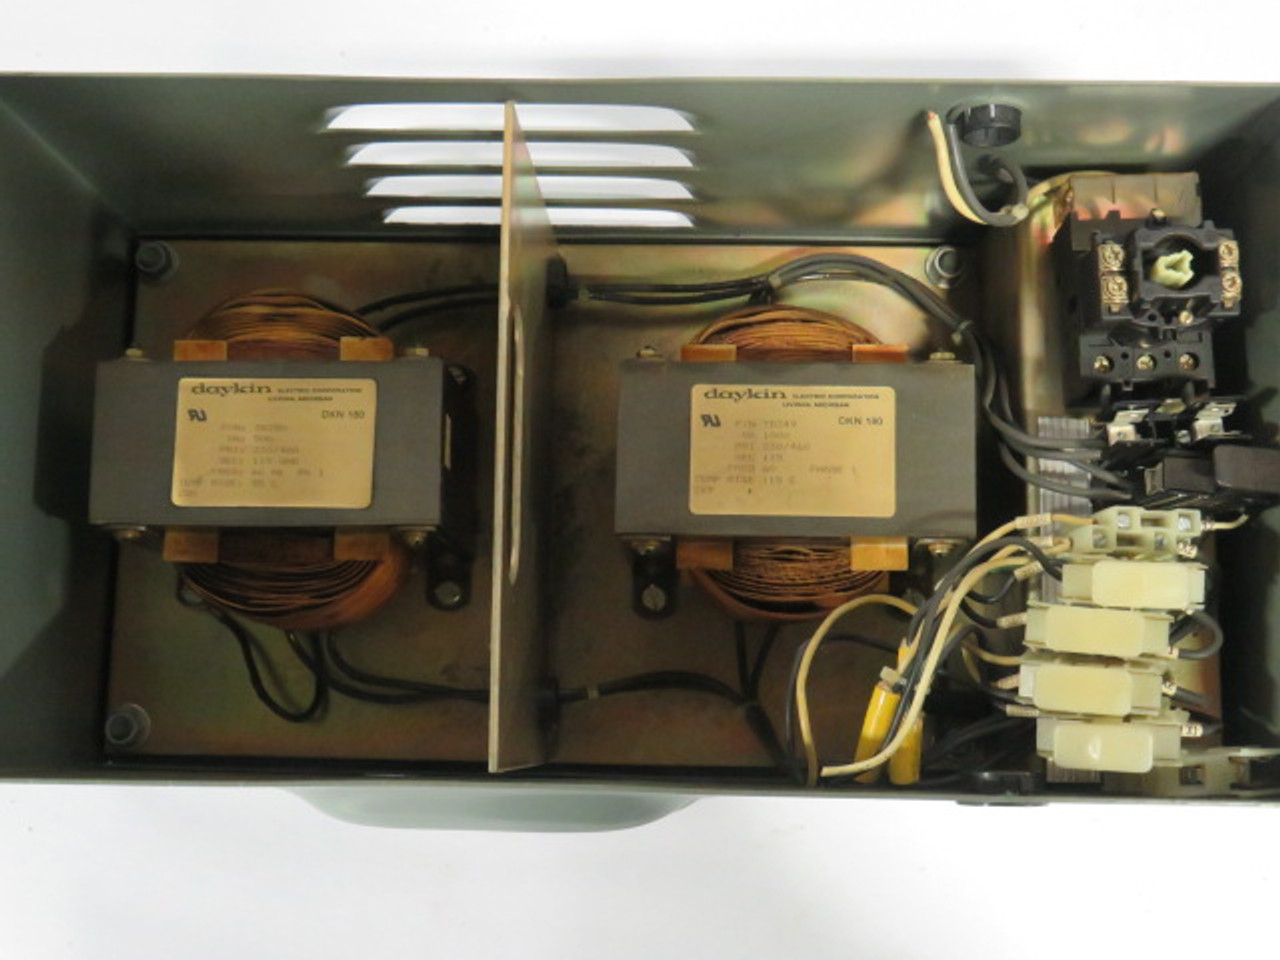 Daykin DTFP-0507 Transformer Disconnect Switch PRI 460V SEC 115V 1Ph USED